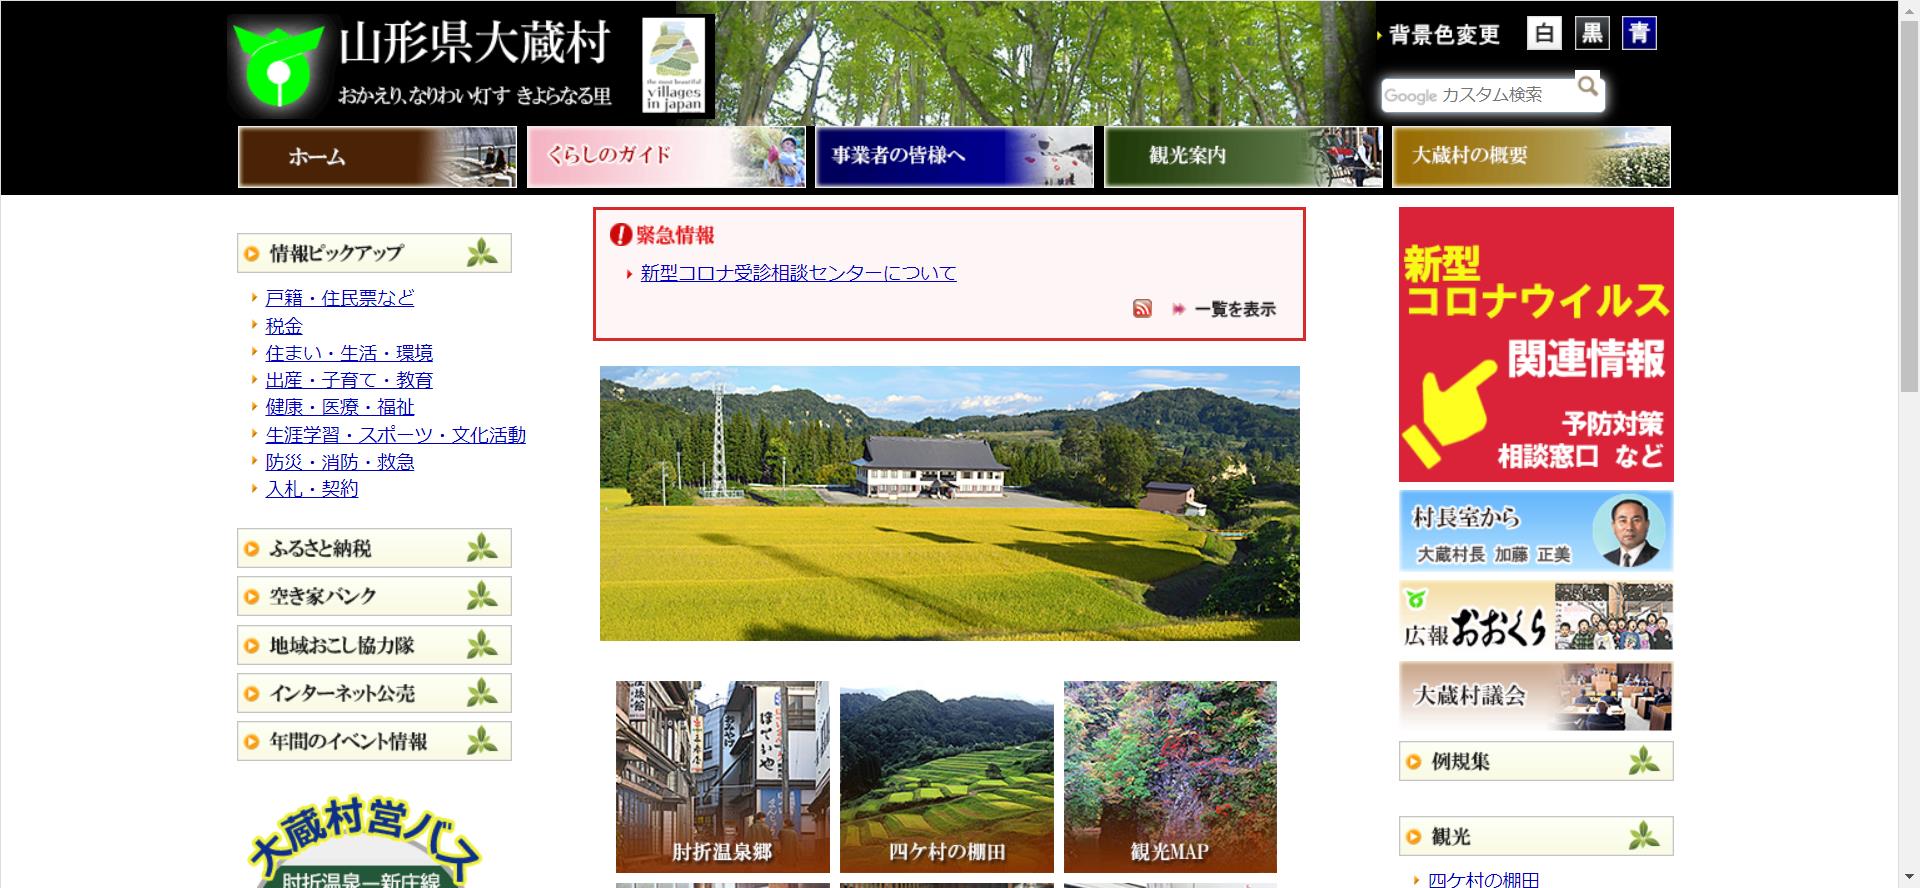 大蔵村ホームページ